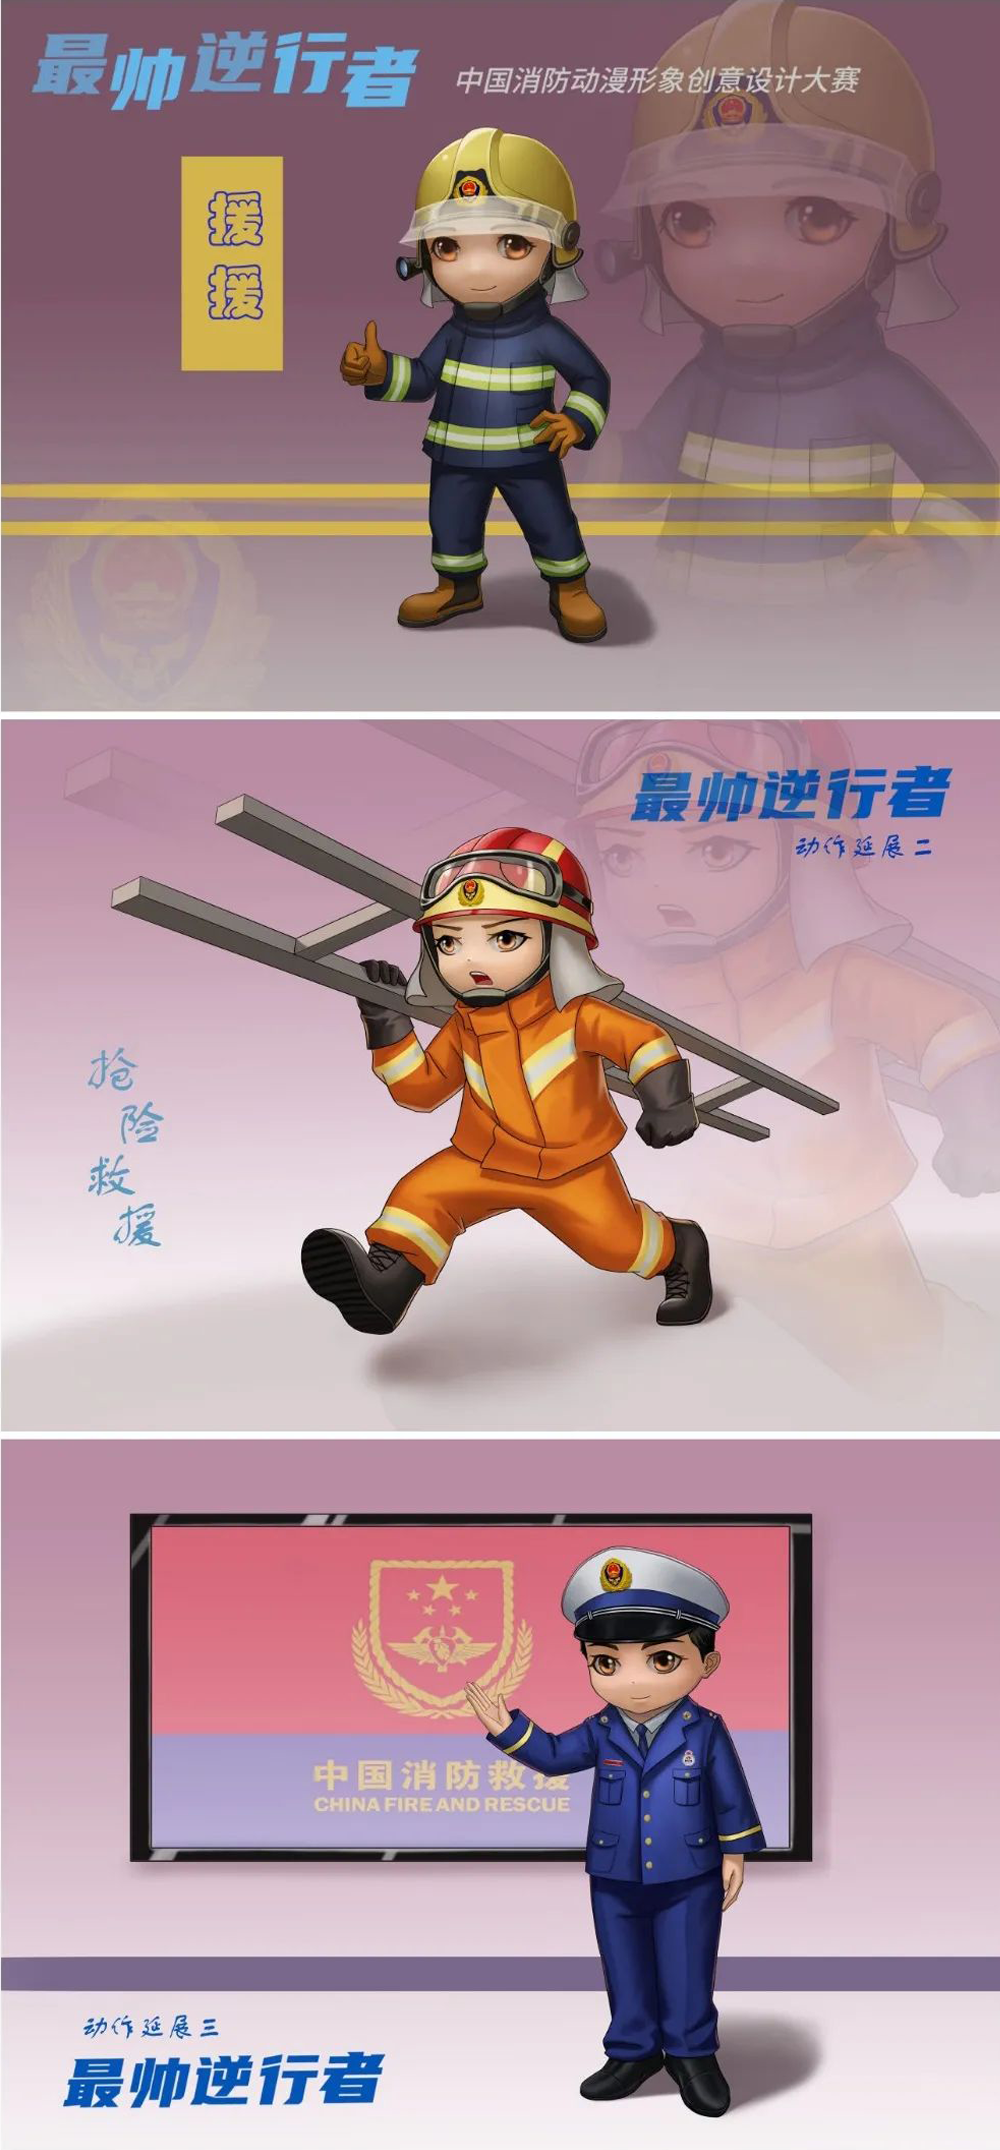 中国消防动漫形象创意设计大赛获奖名单及获奖作品(图3)